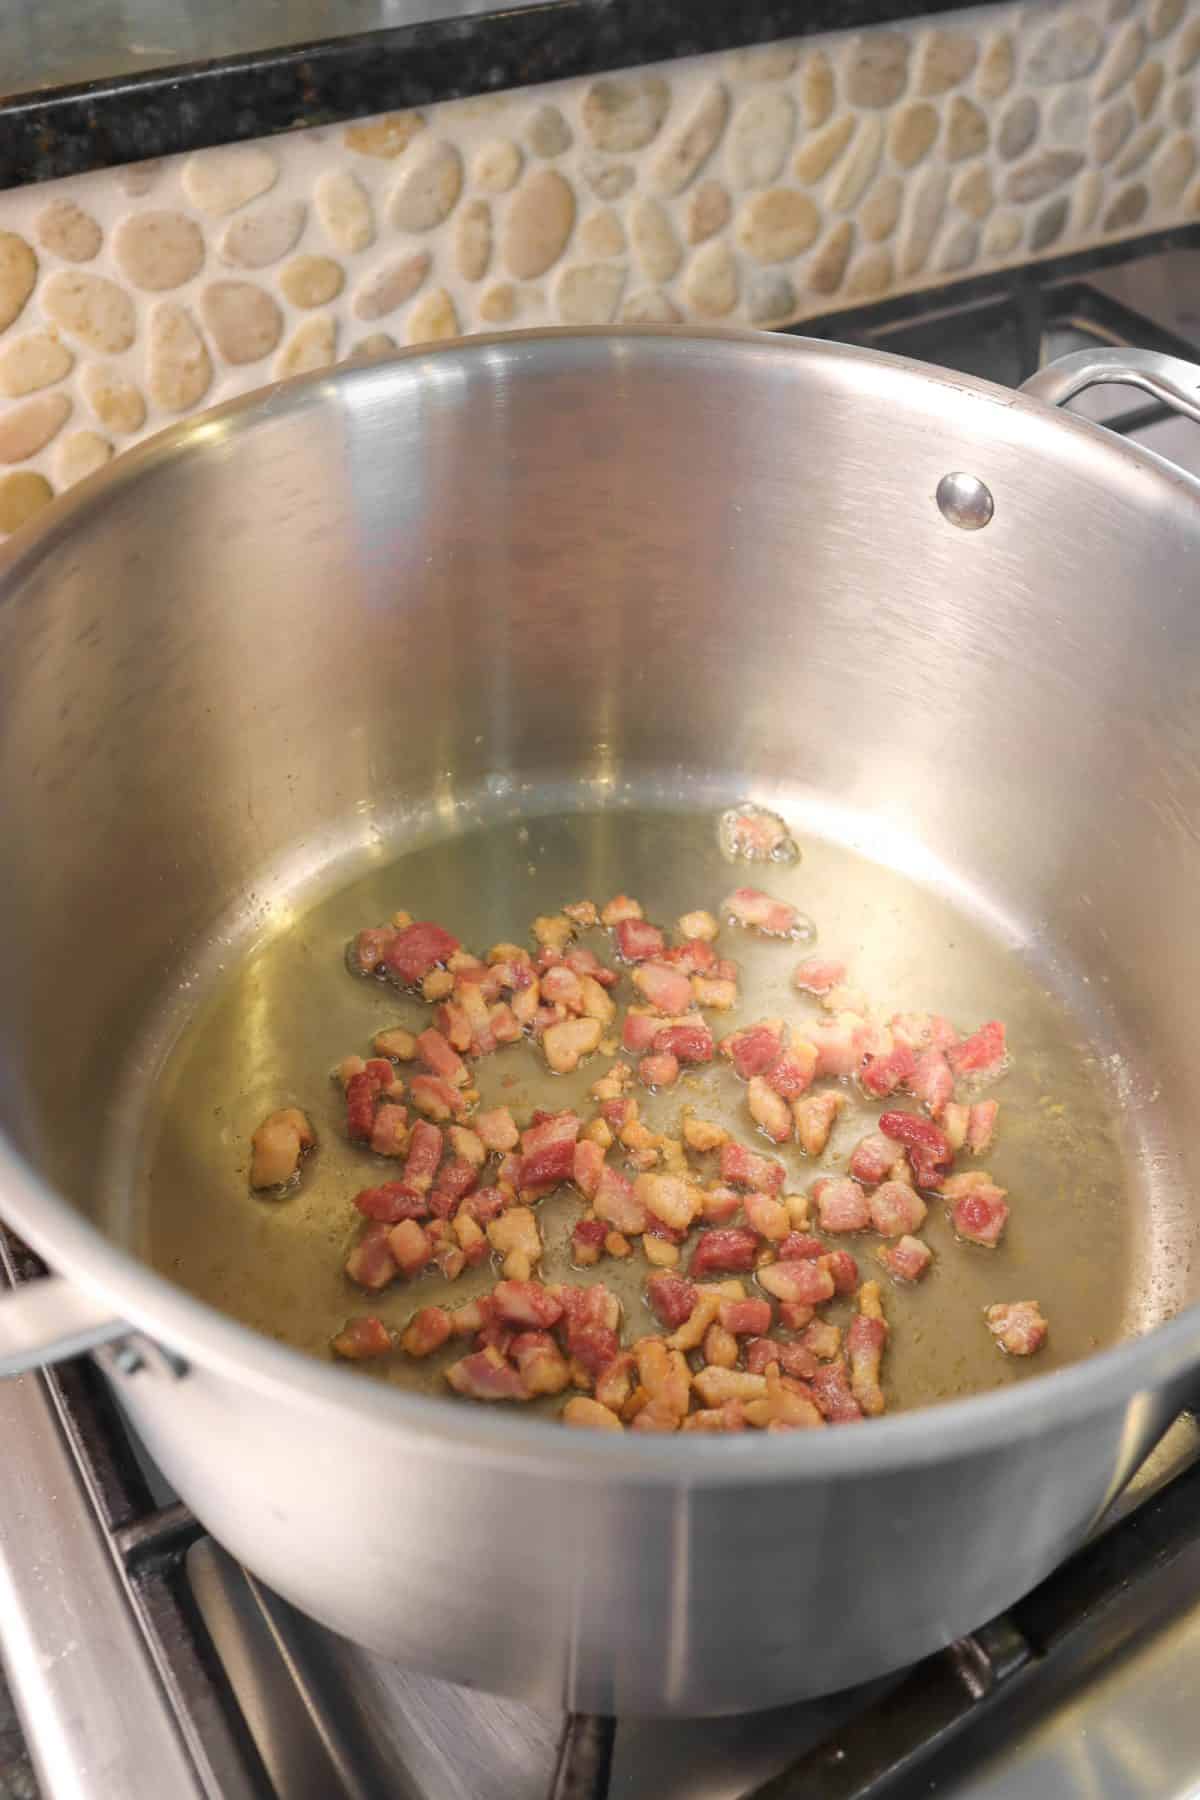 Sautéed prosciutto in a stock pot